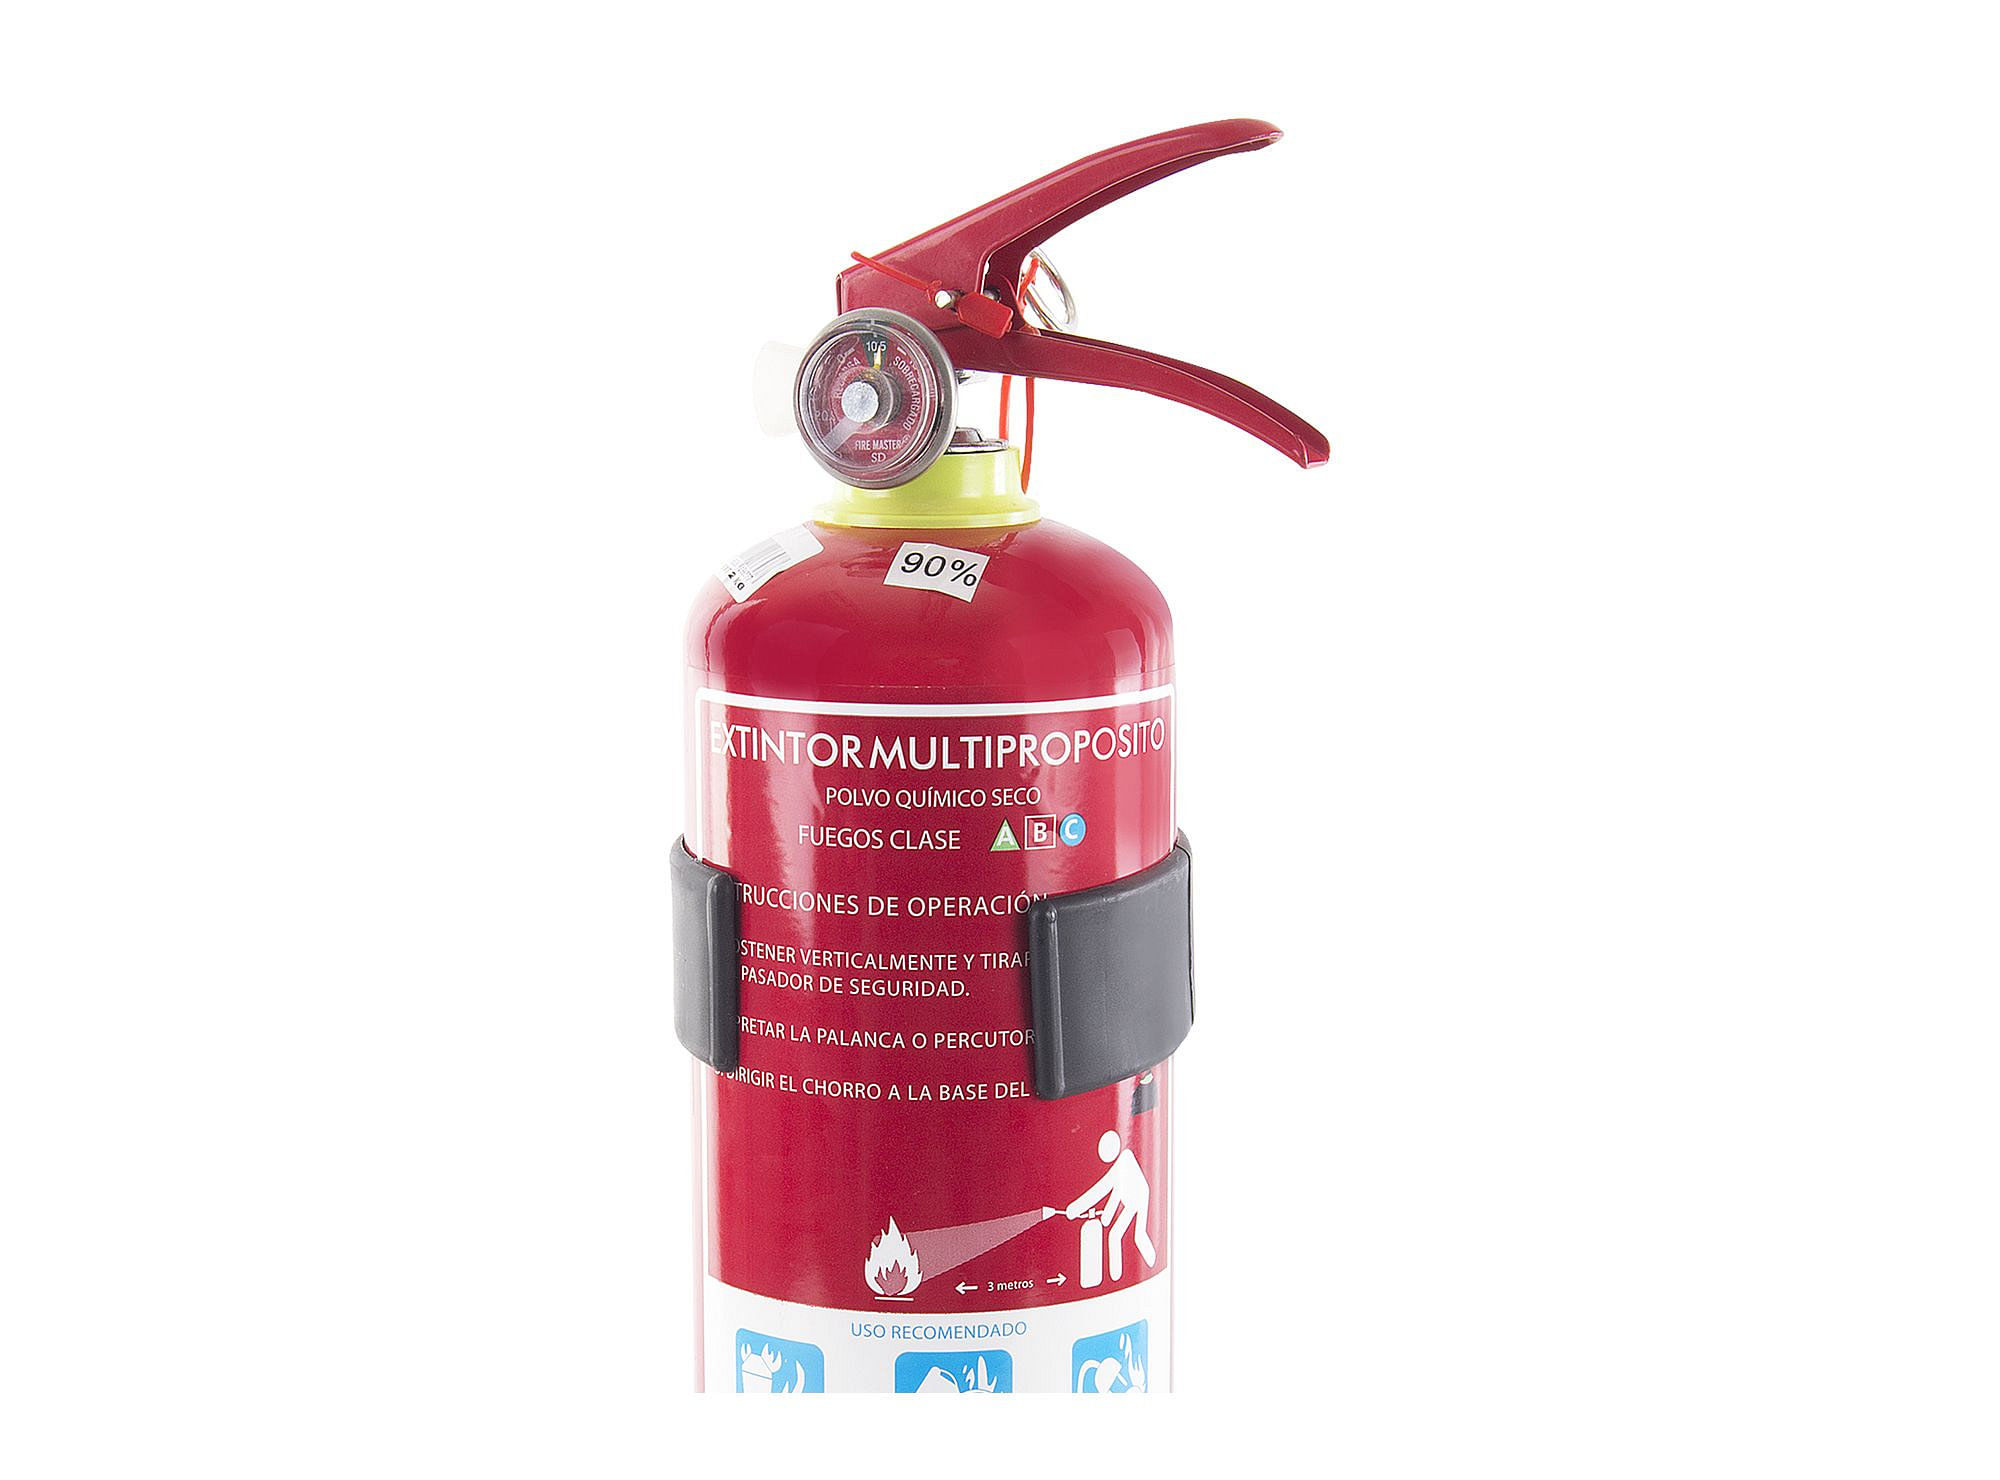 Extintor especial para fuegos eléctricos 2kg - Proextin